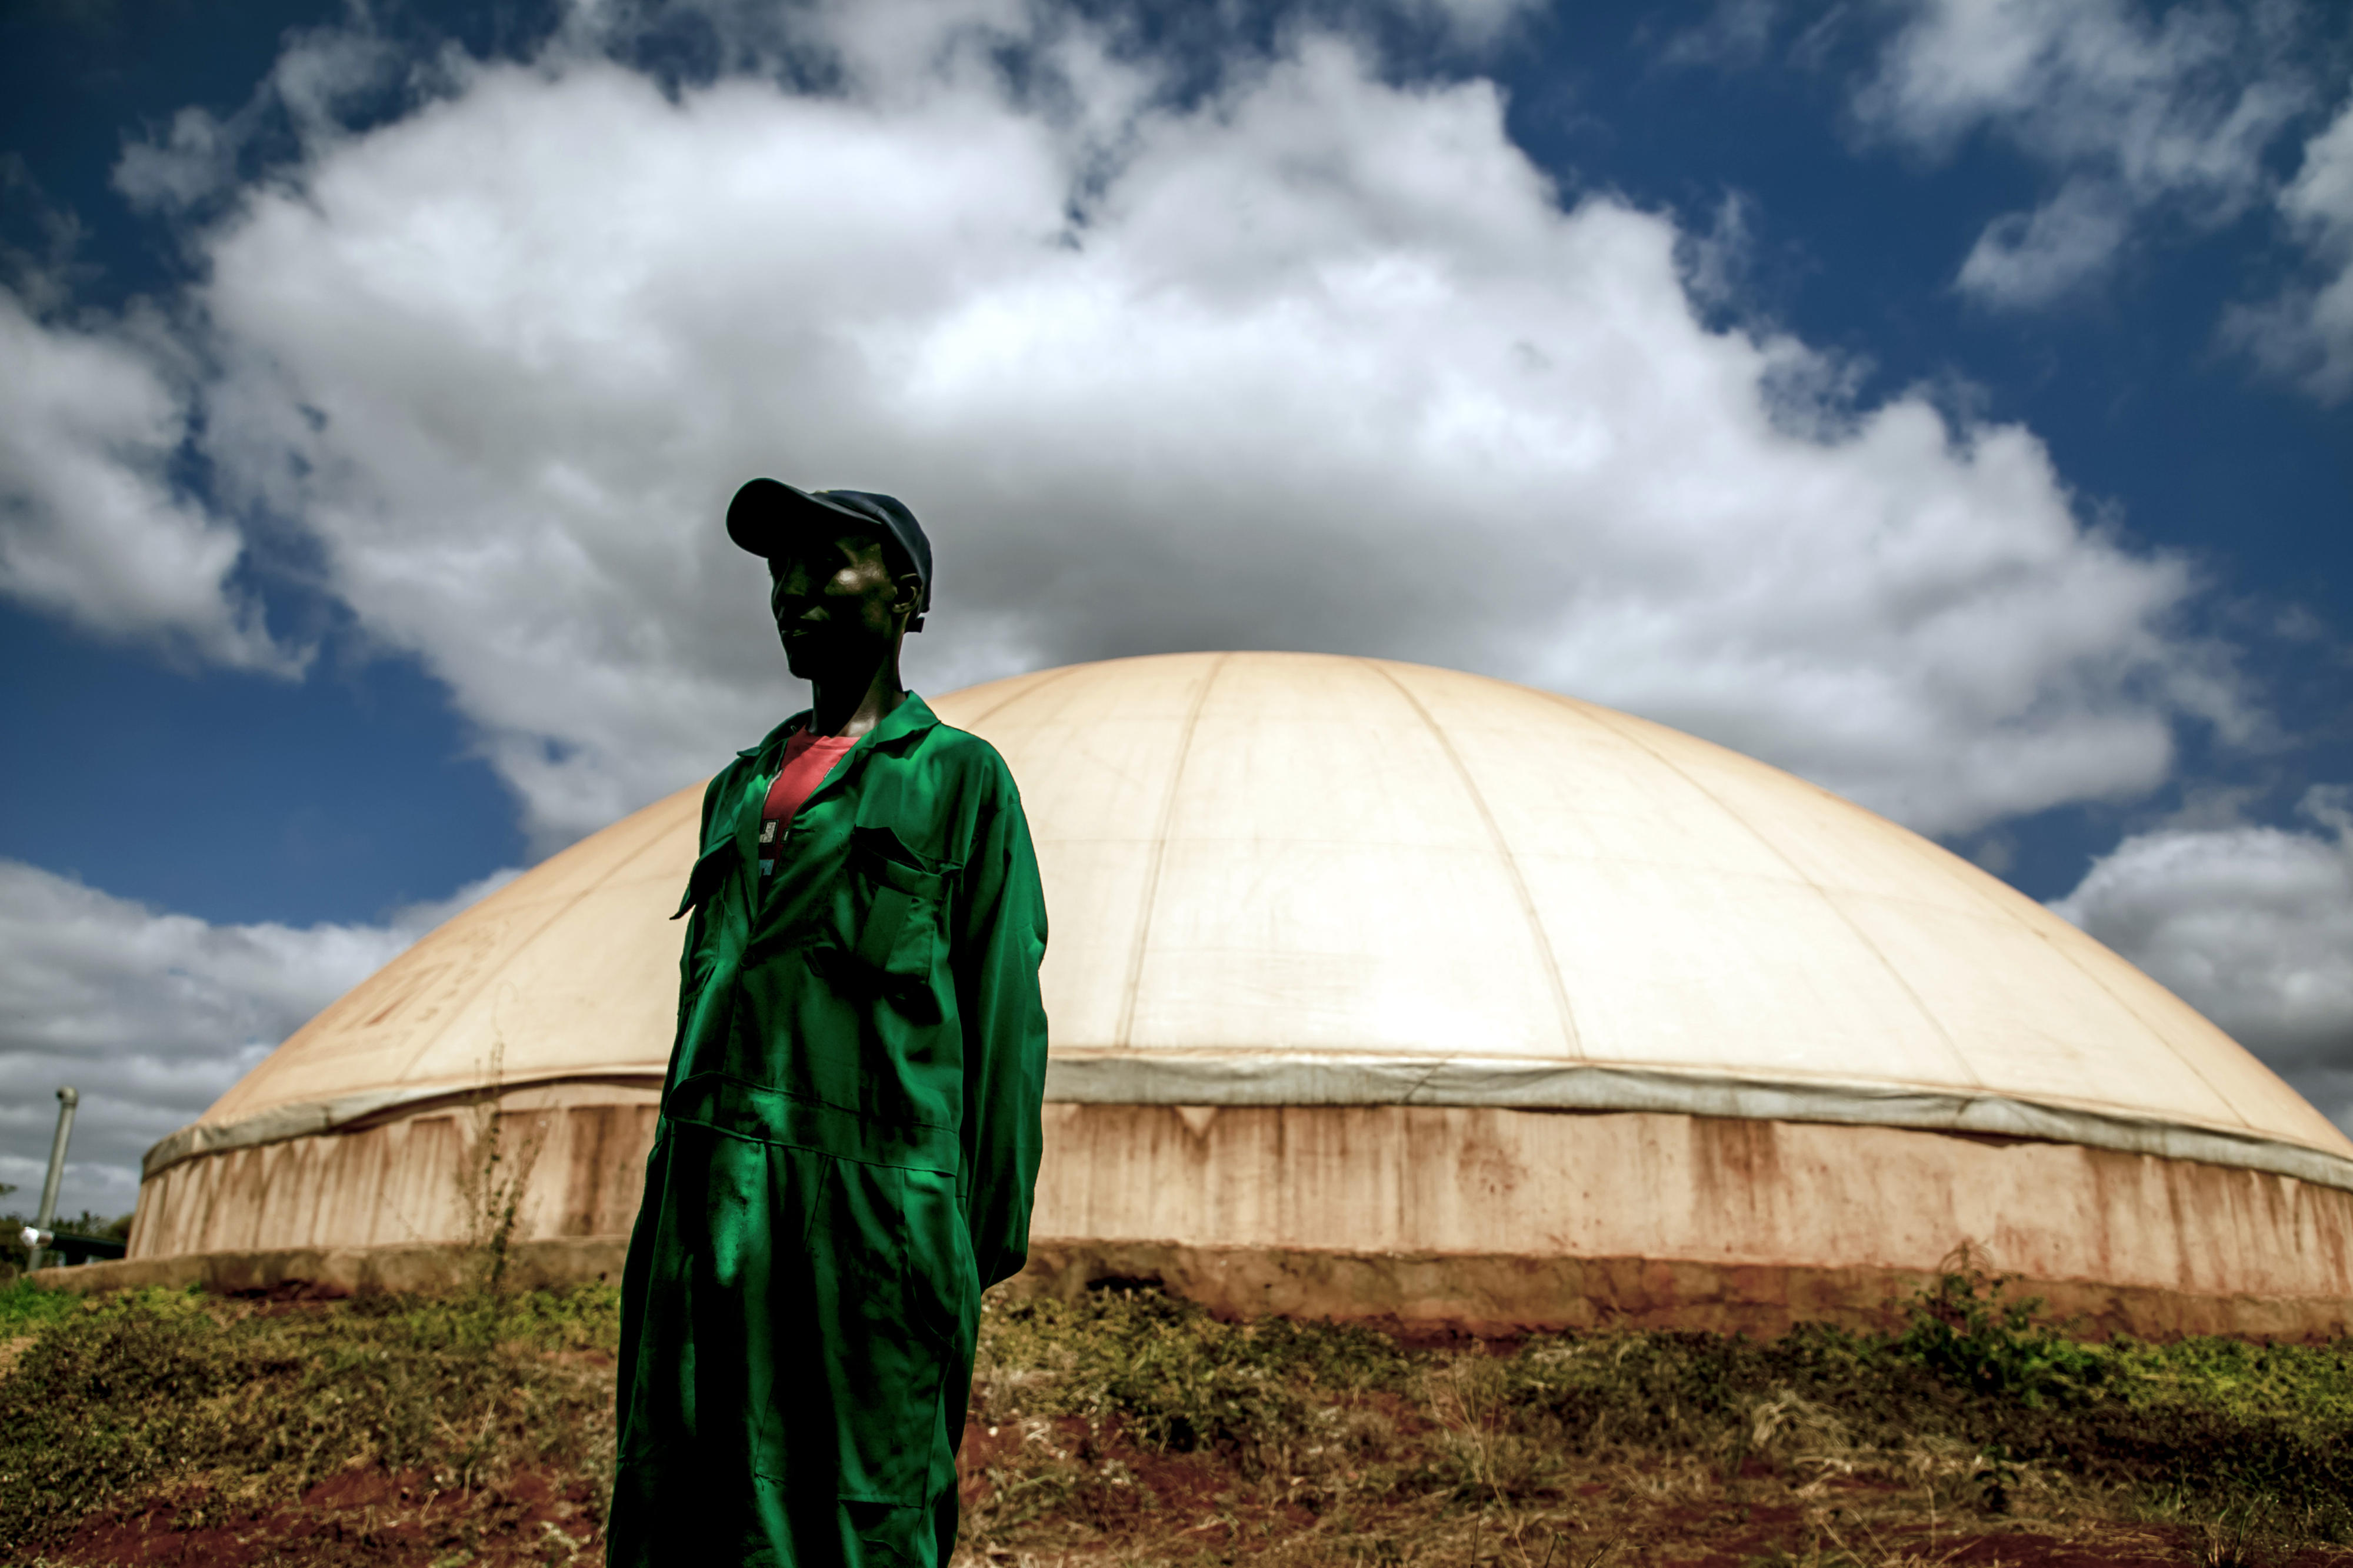 Biogasproduktion aus den Abfällen der Ölpressung mit Avocados in einer Ölmühle in Kenia